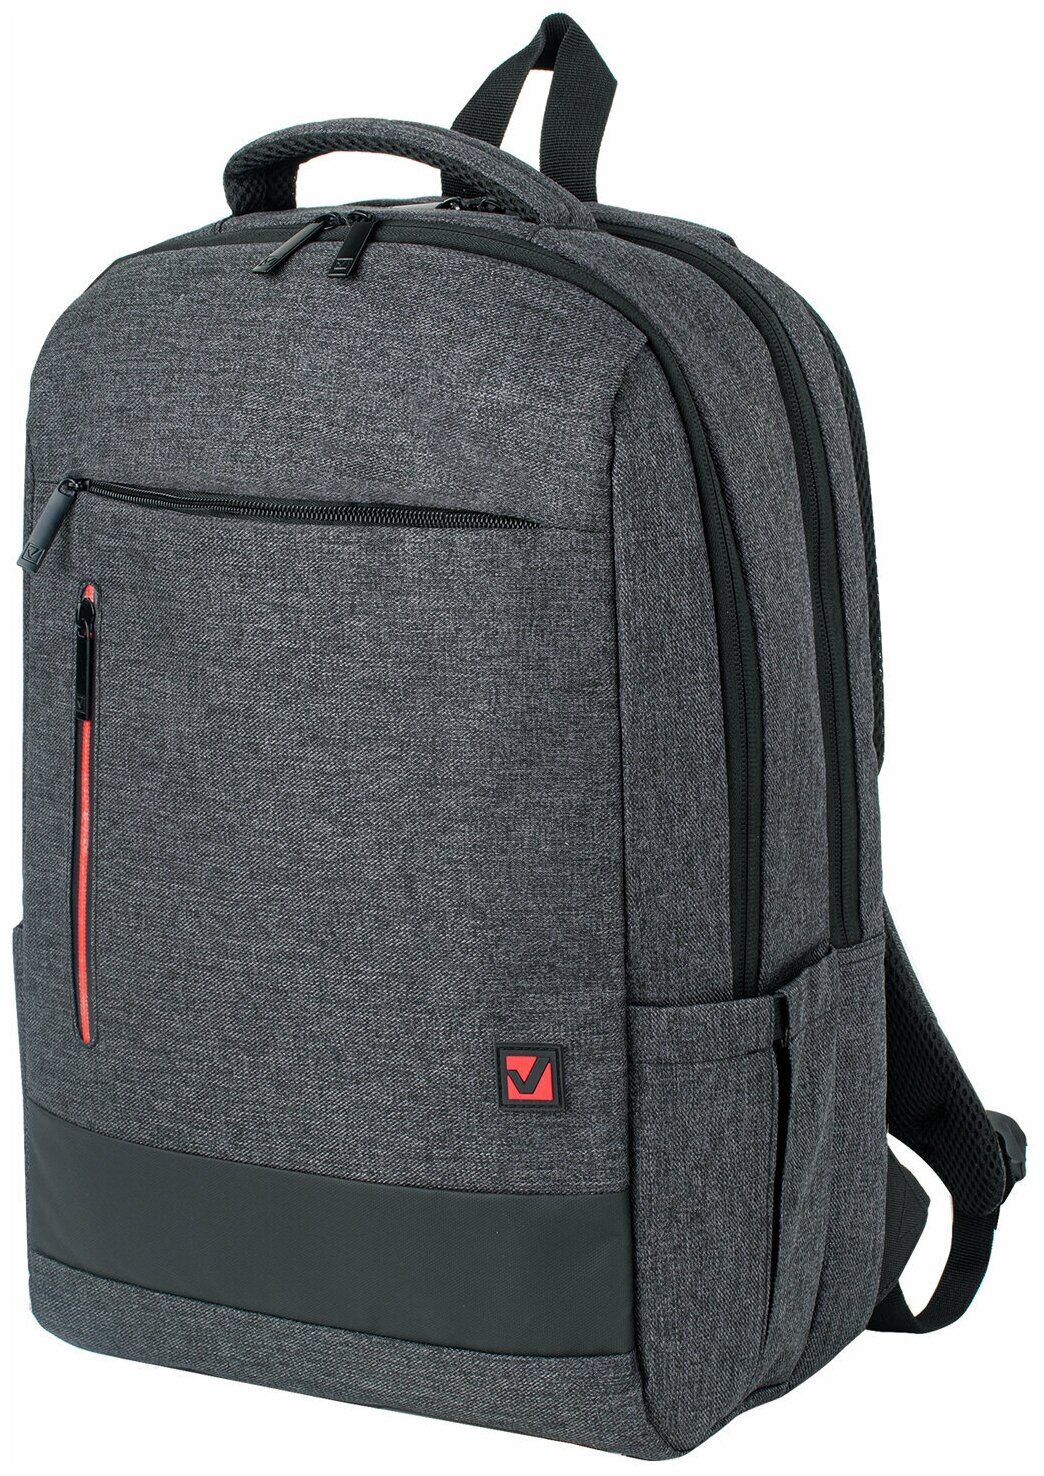 Рюкзак BRAUBERG URBAN универсальный, с отделением для ноутбука, Houston, темно-серый, 45х31х15 см, 229895 В комплекте: 1шт.